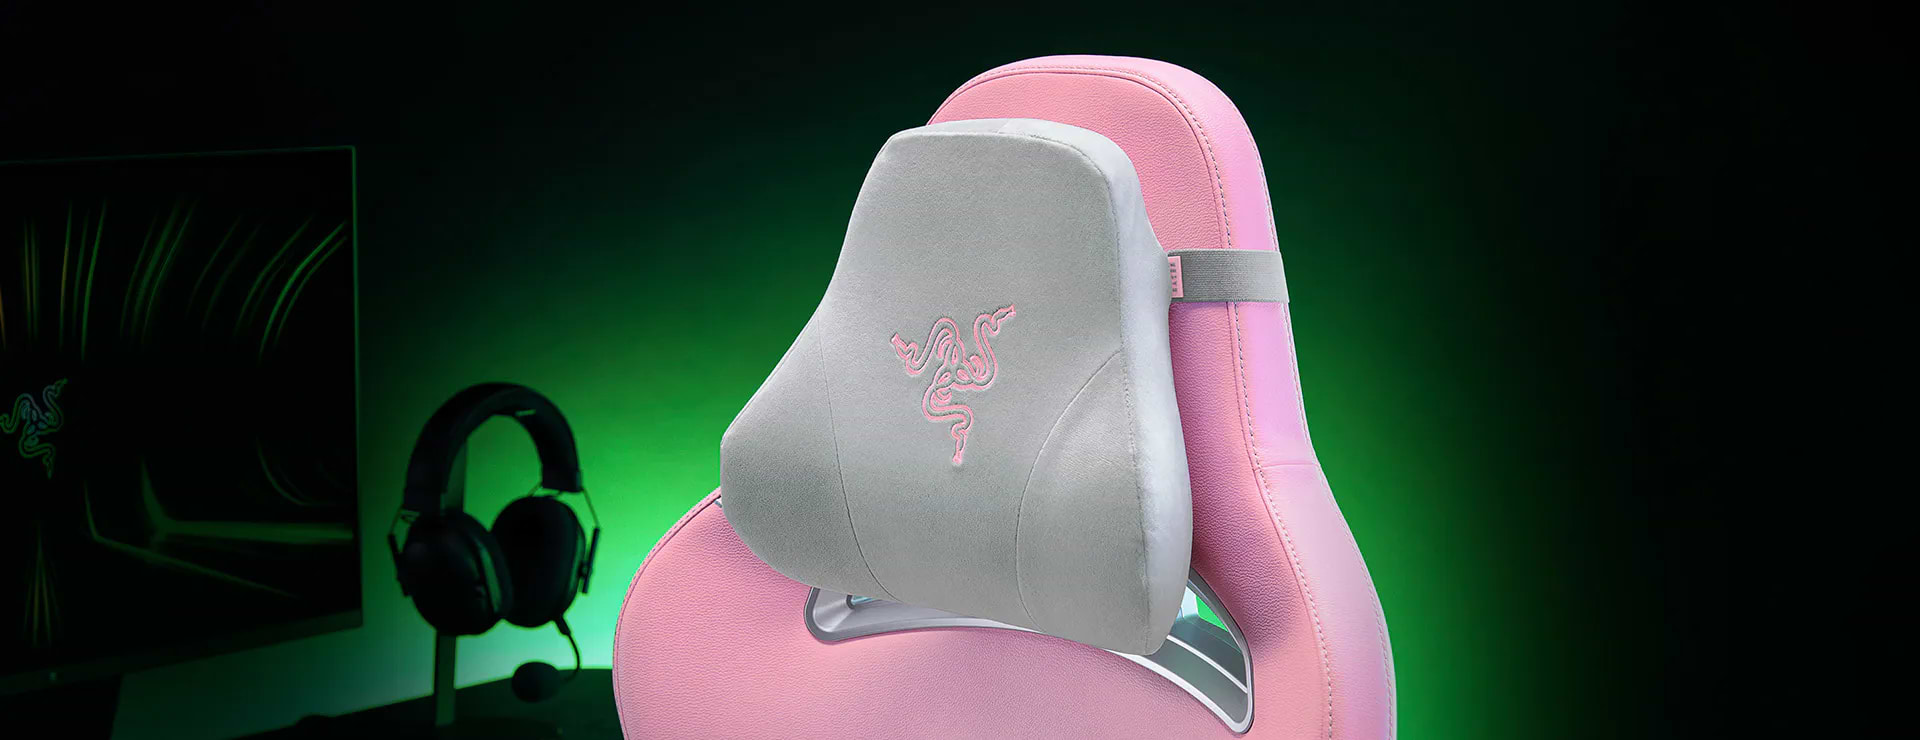 כיסא גיימינג Razer Enki - צבע ורוד שלוש שנות אחריות ע"י היבואן הרשמי